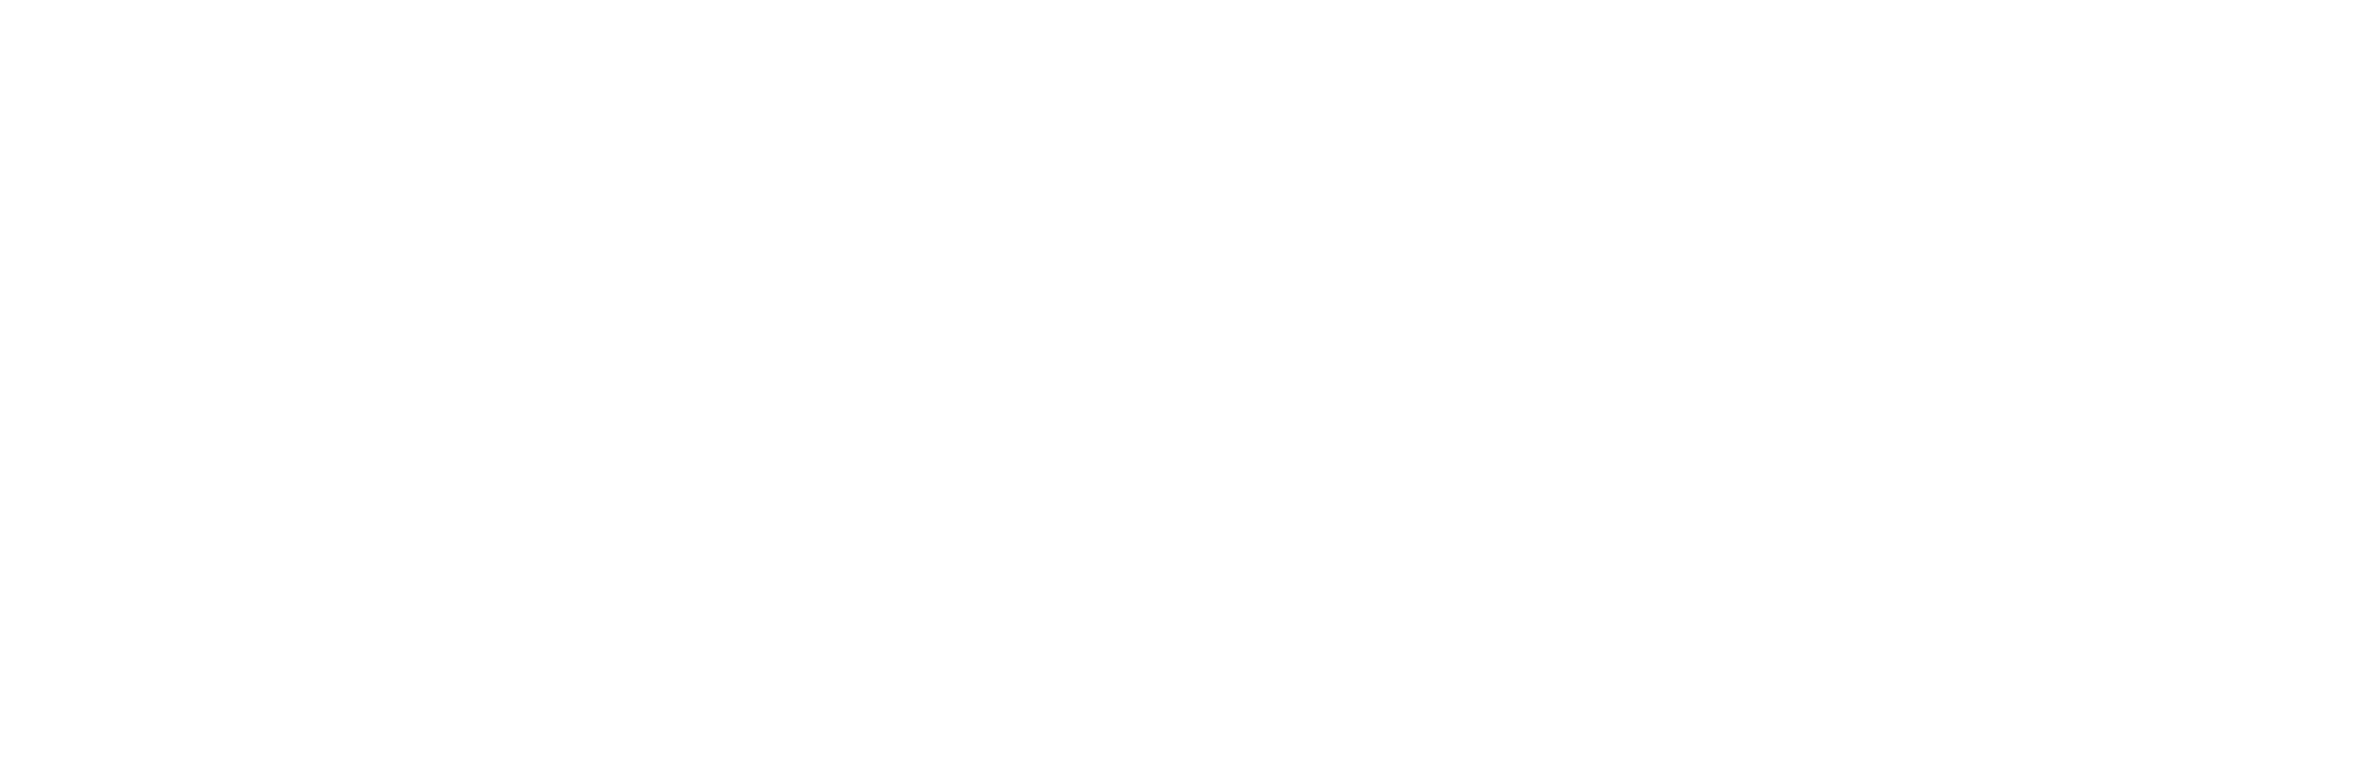 スシヅメ戦争-Yagi Naoki Works-